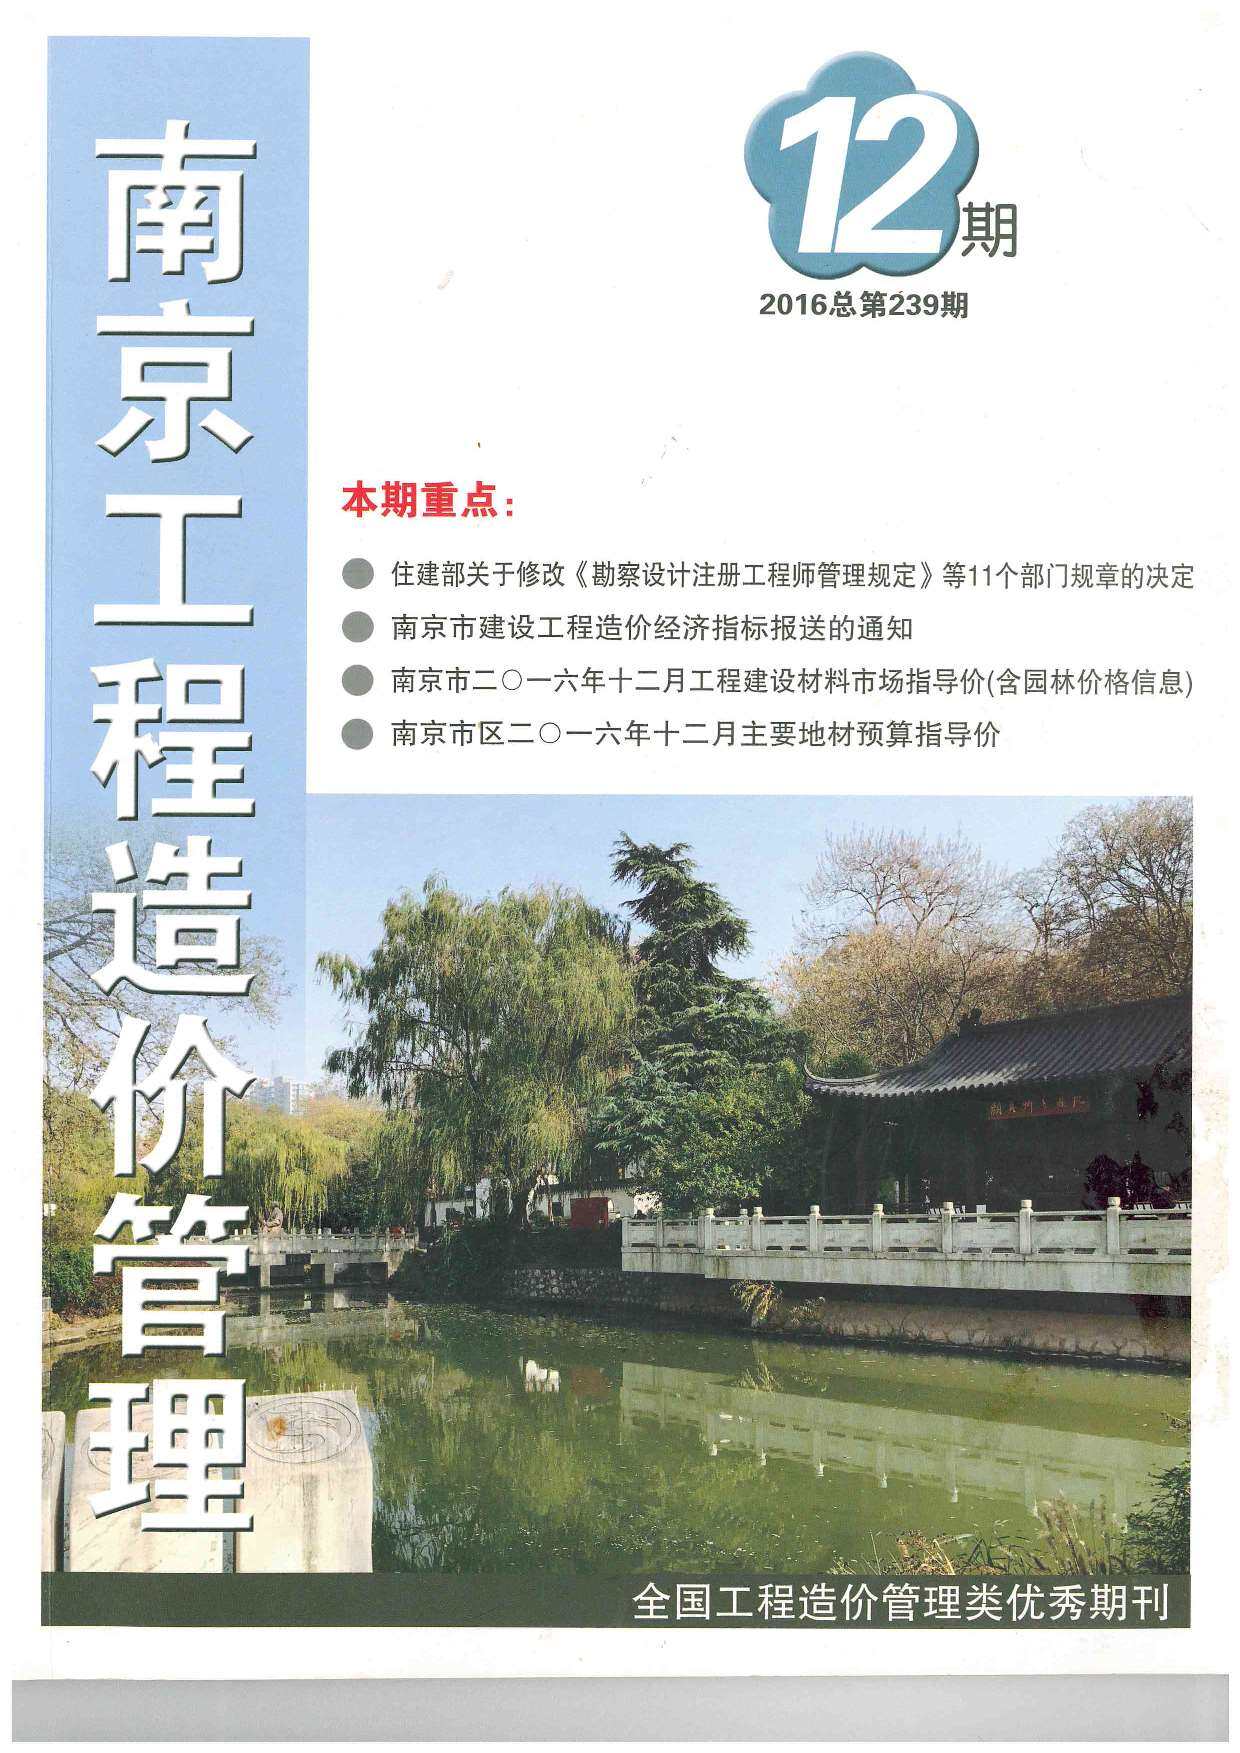 南京市2016年12月工程造价信息期刊